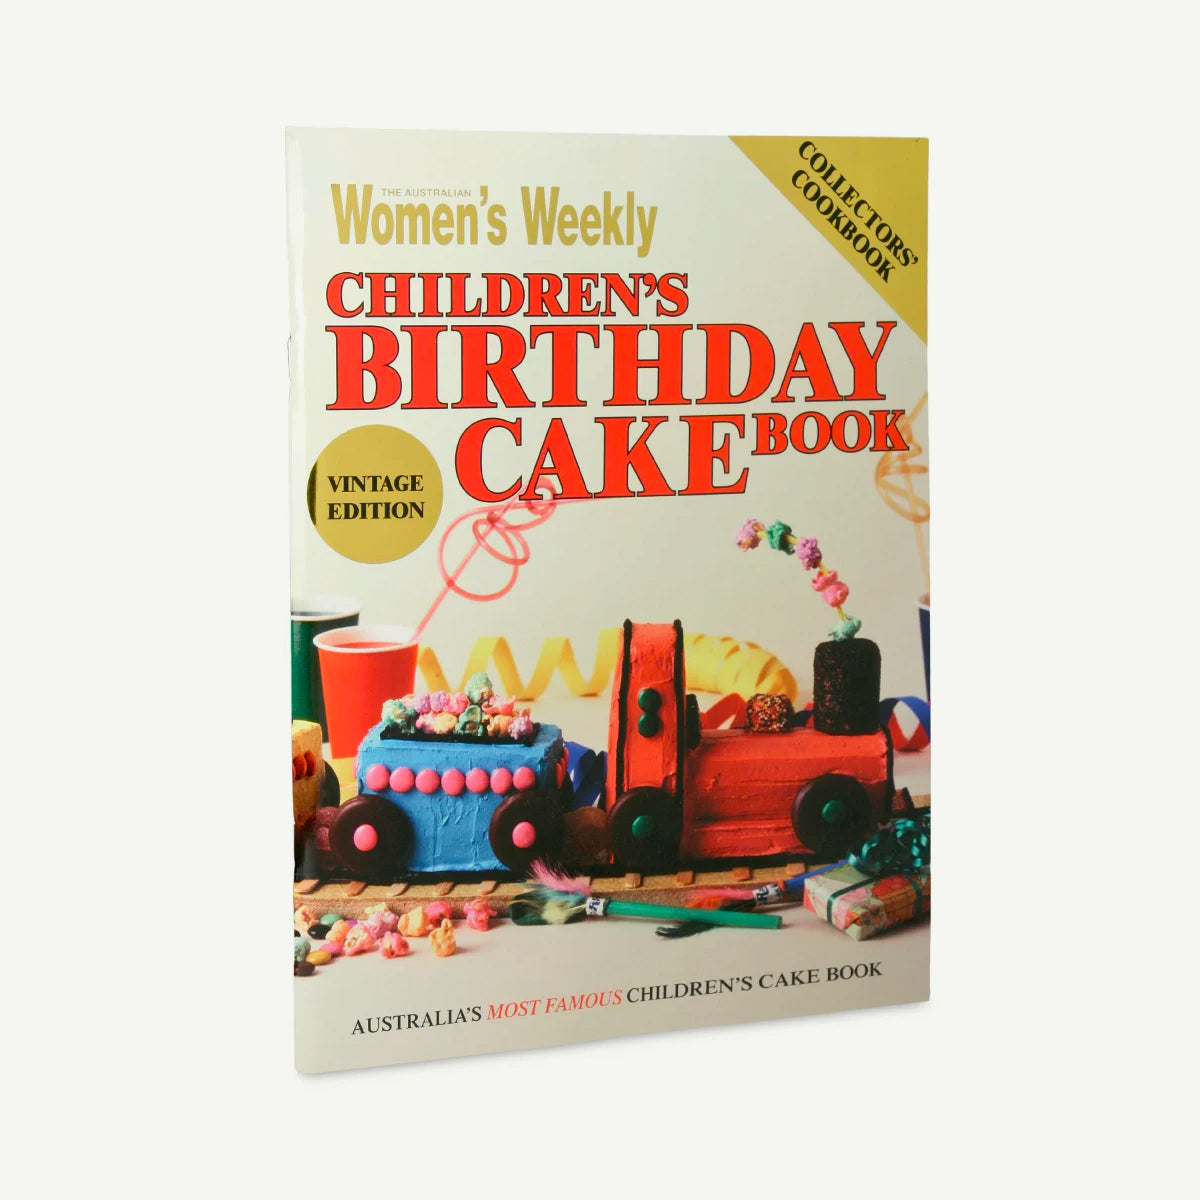 Women's Weekly Children's Birthday Cake Book - Vintage Edition